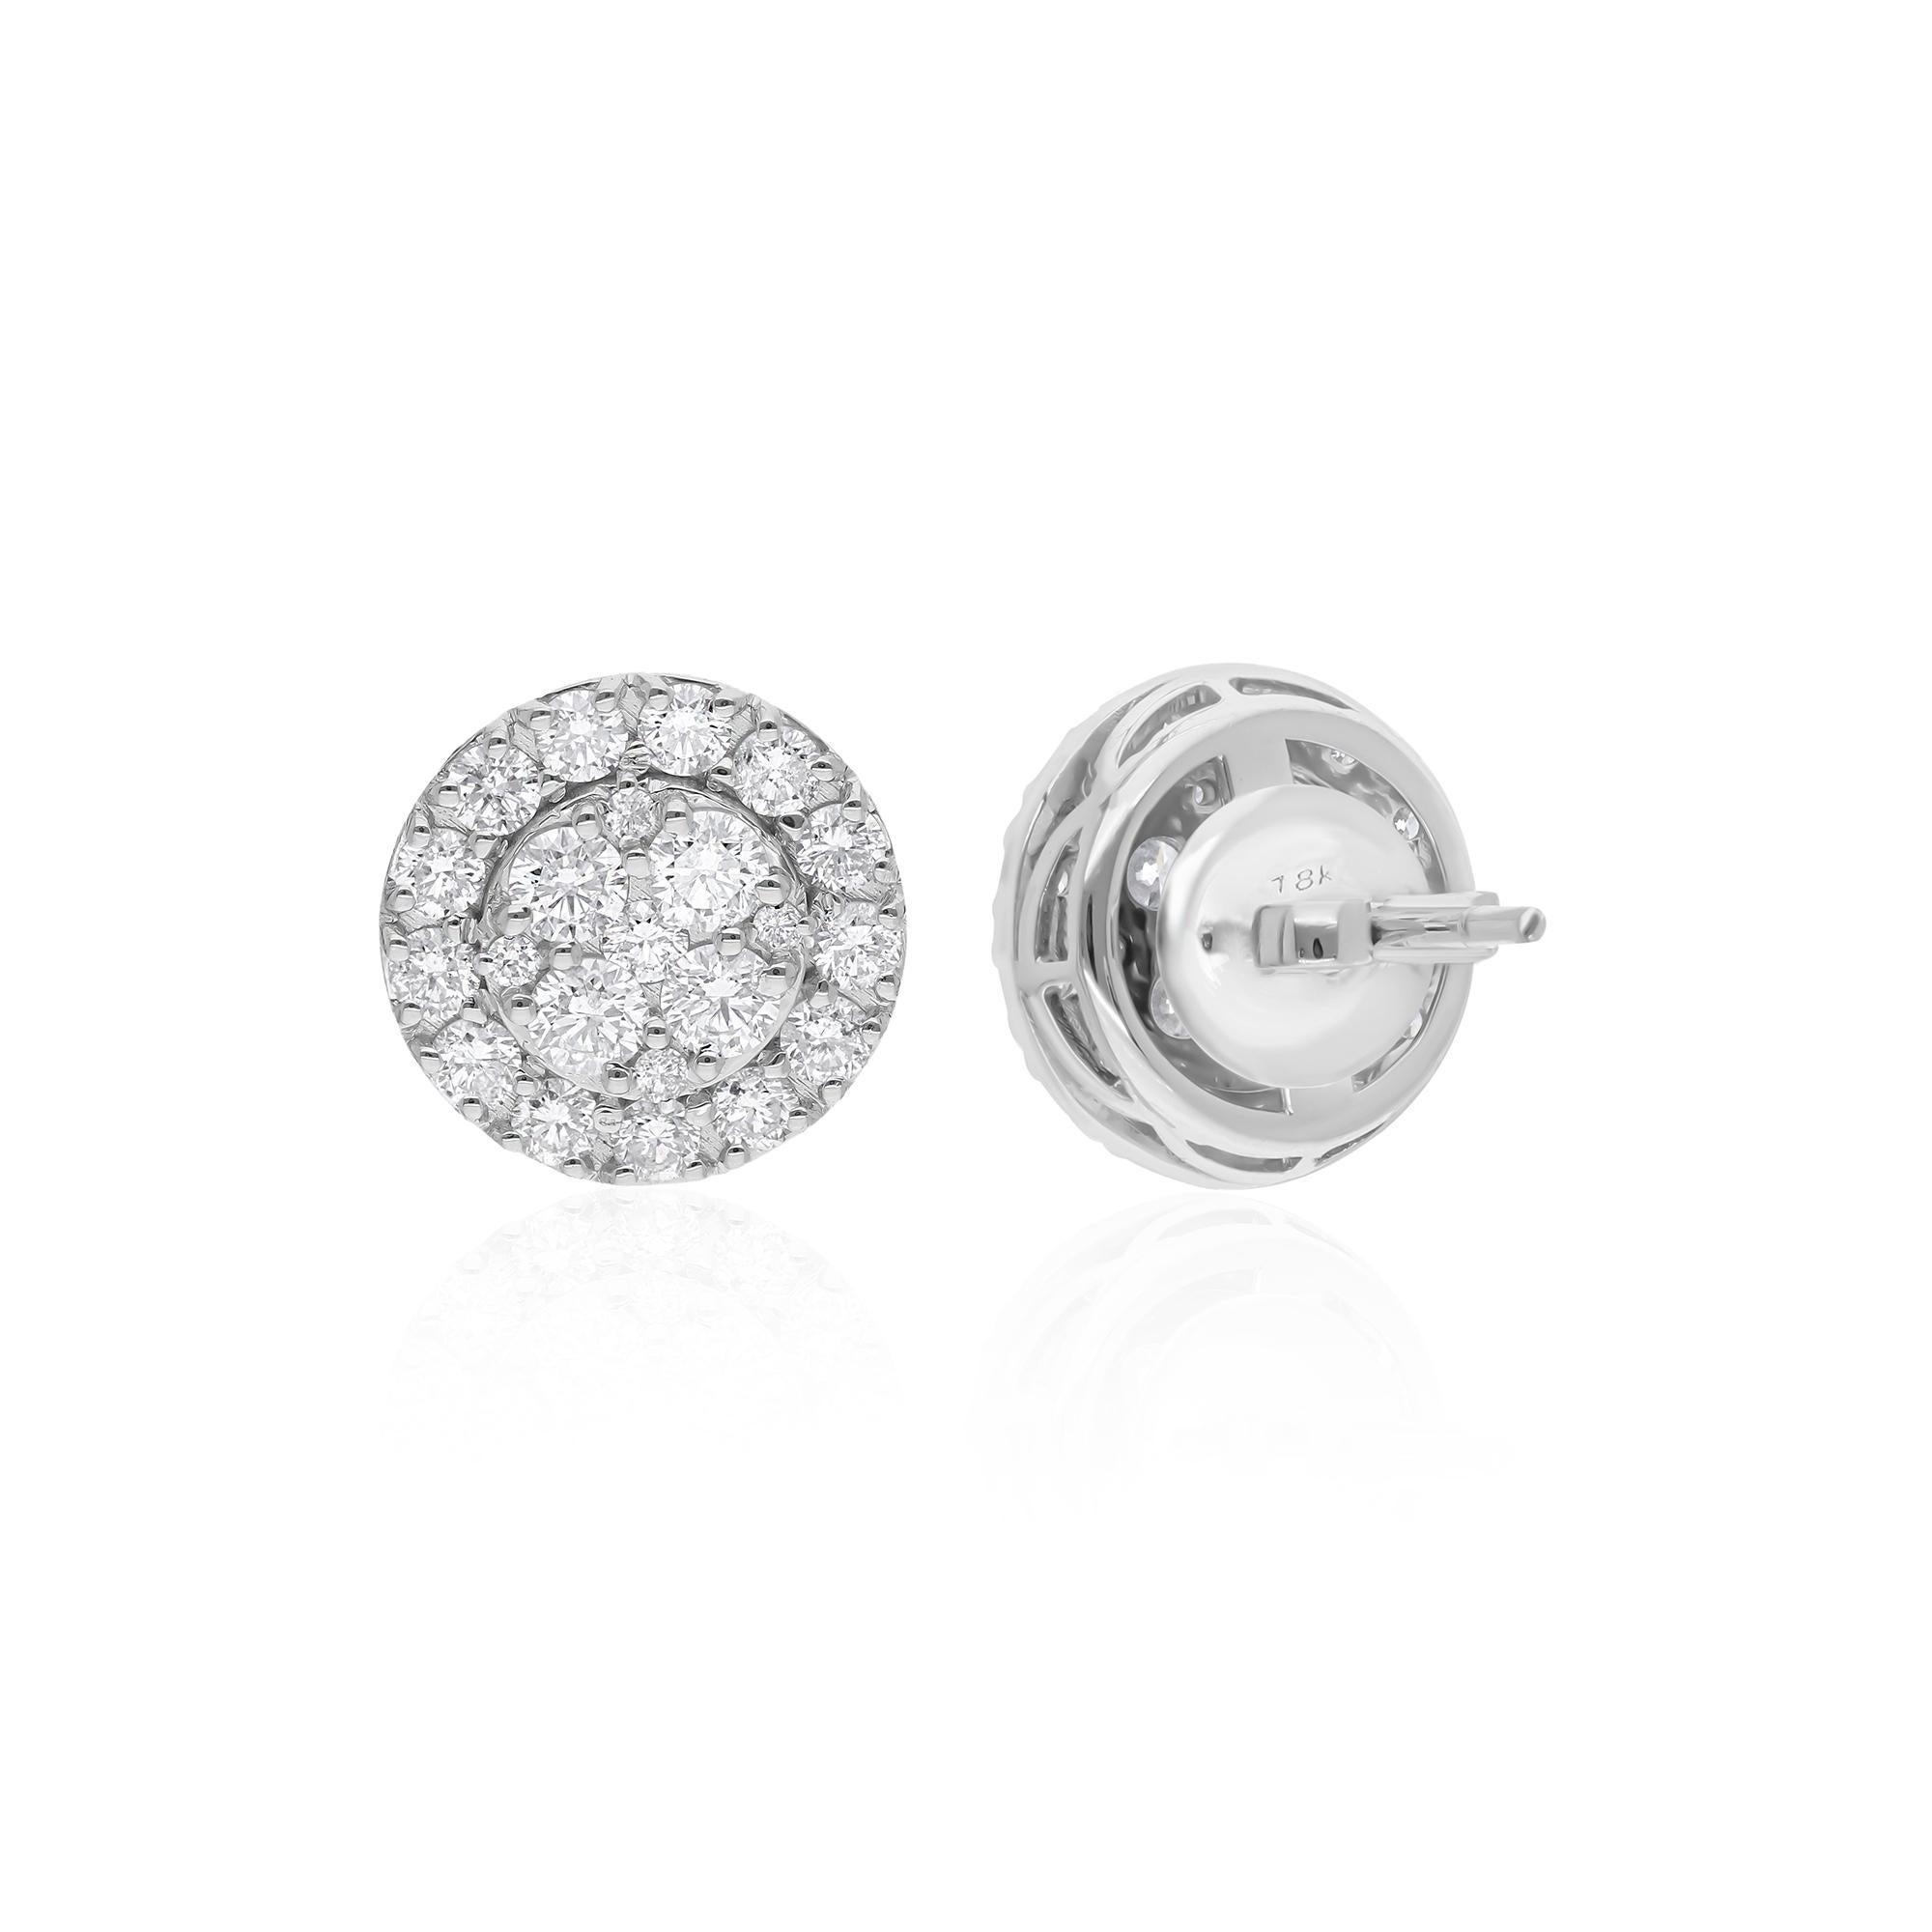 Gönnen Sie sich zeitlose Eleganz mit diesen exquisiten Diamantohrsteckern, die mit einem atemberaubenden Paar Diamanten im Rundschliff von insgesamt 1,97 Karat besetzt sind. Jeder Diamant besticht durch seine funkelnde Brillanz, die das Auge fesselt